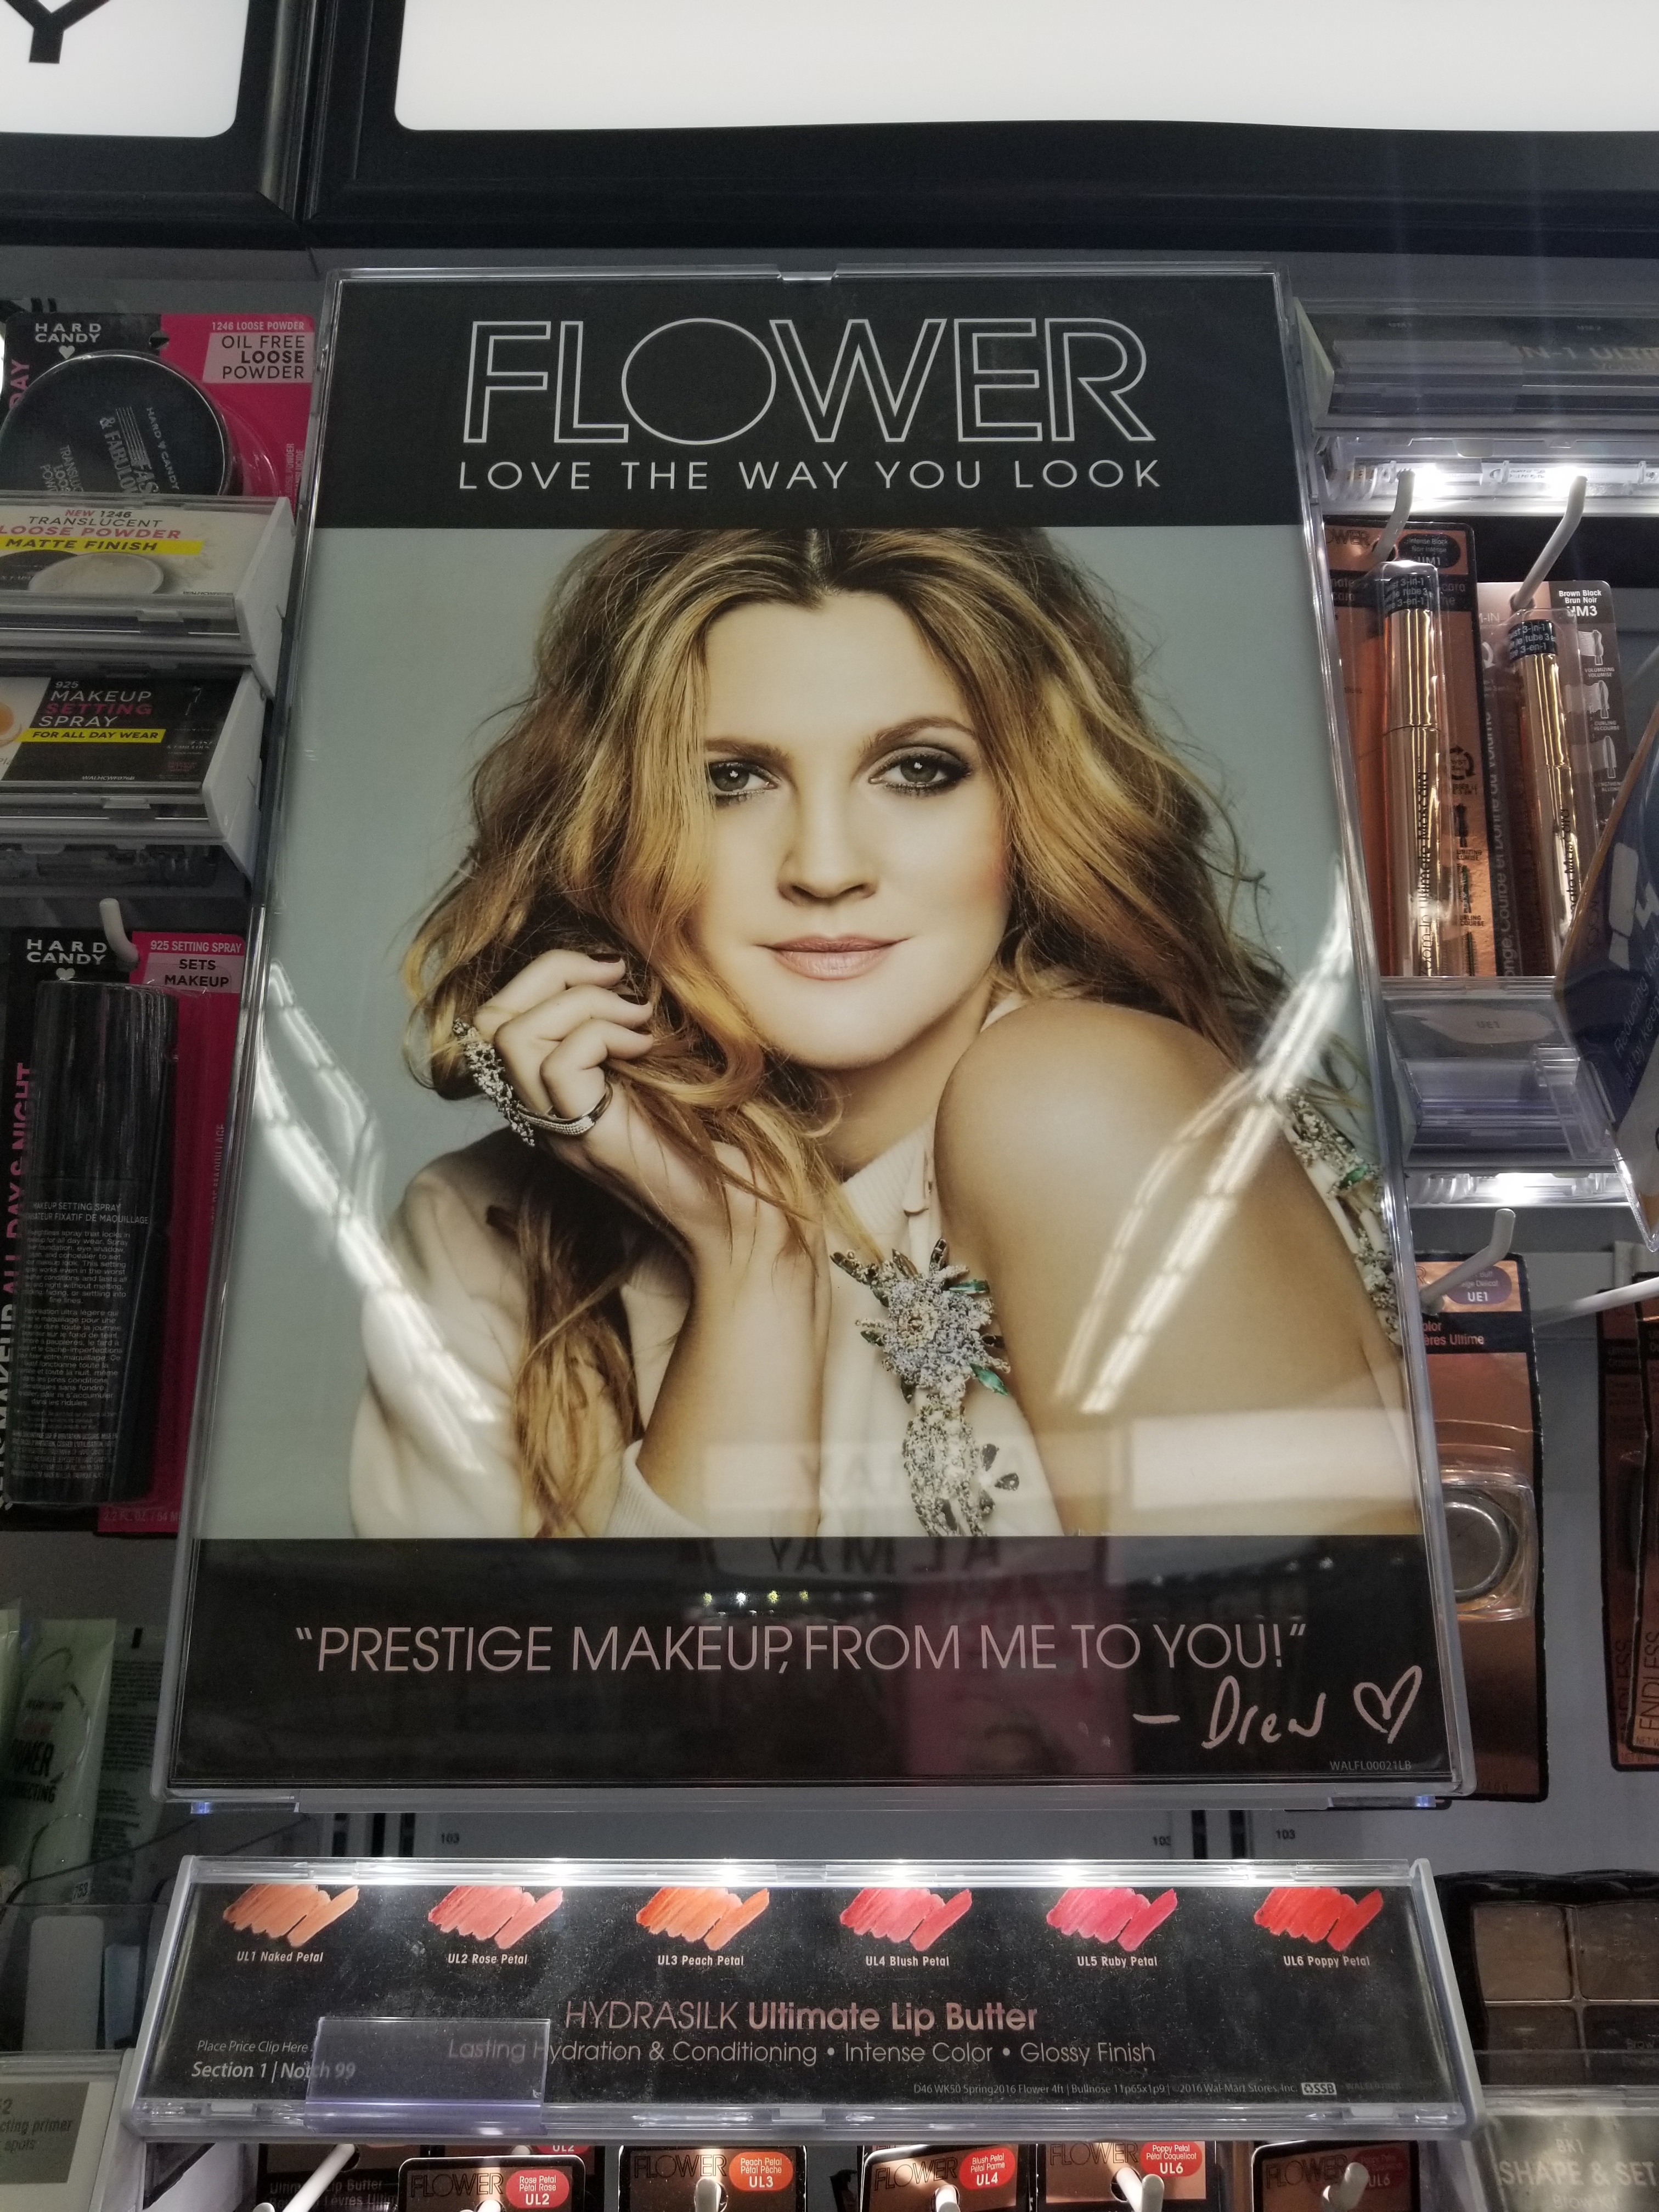 Flower Beauty, cruelty-free, makeup, skin care, Drew Barrymore